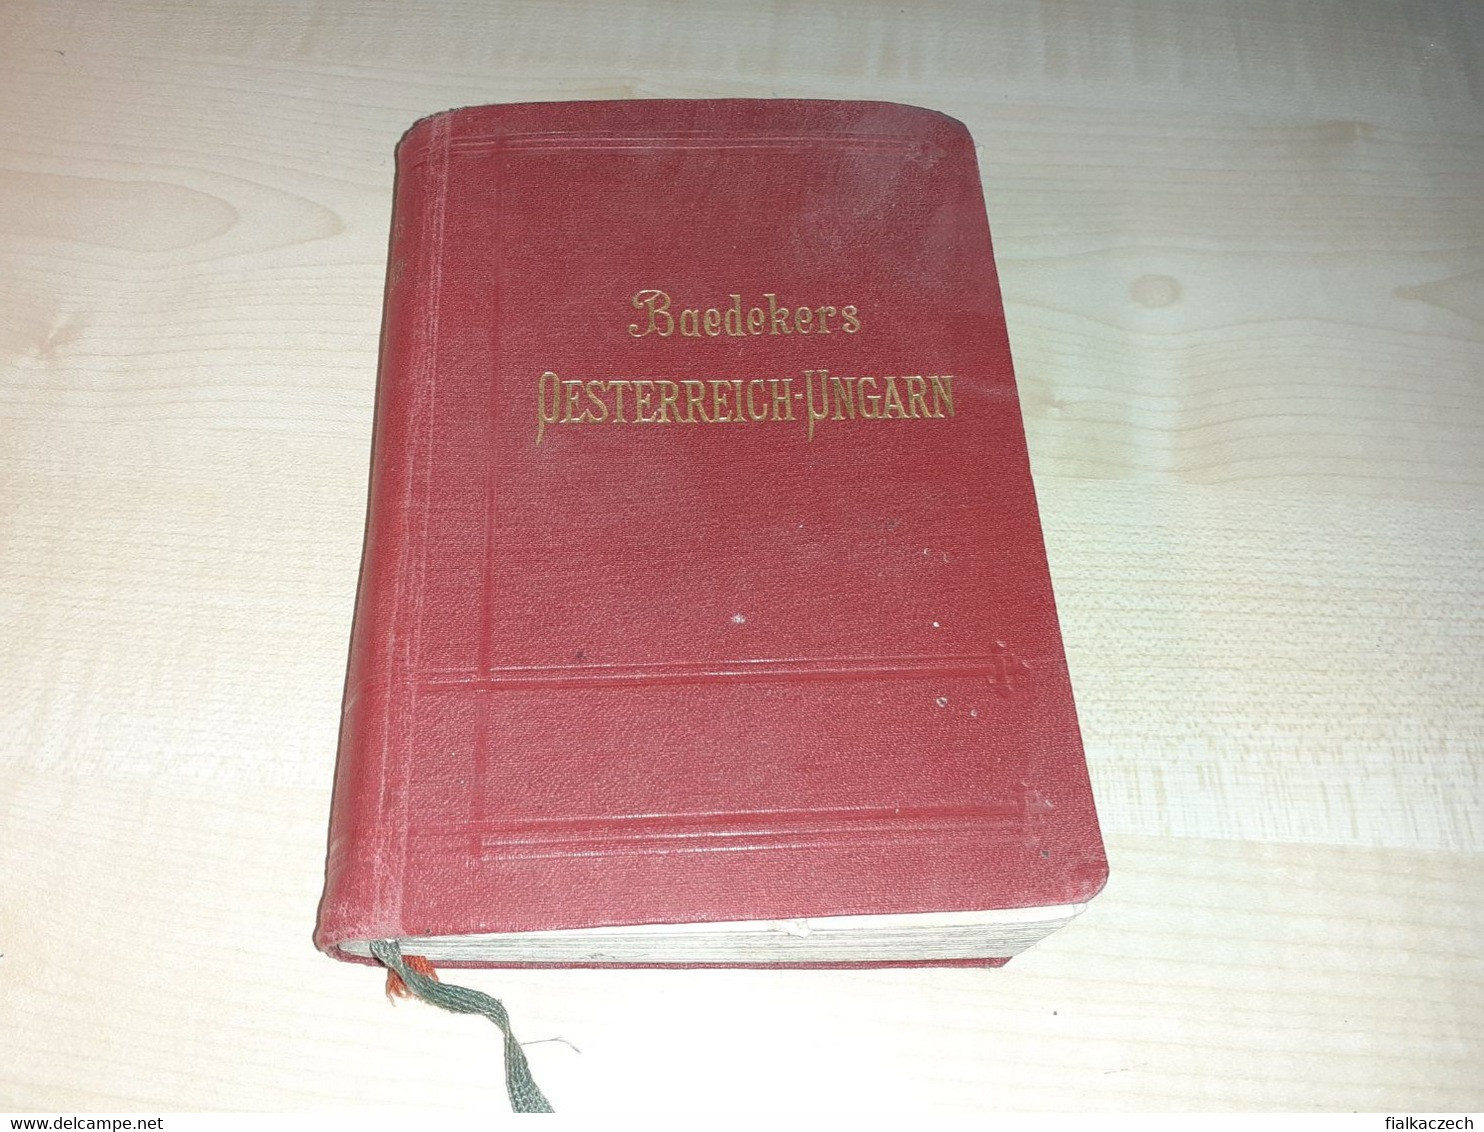 Baedekers, Österreich - Ungarn, Belgrad, Cetinje, Bukarest, Tour Guide, 1910 - Leipzig, Austria - Hungary - Autriche